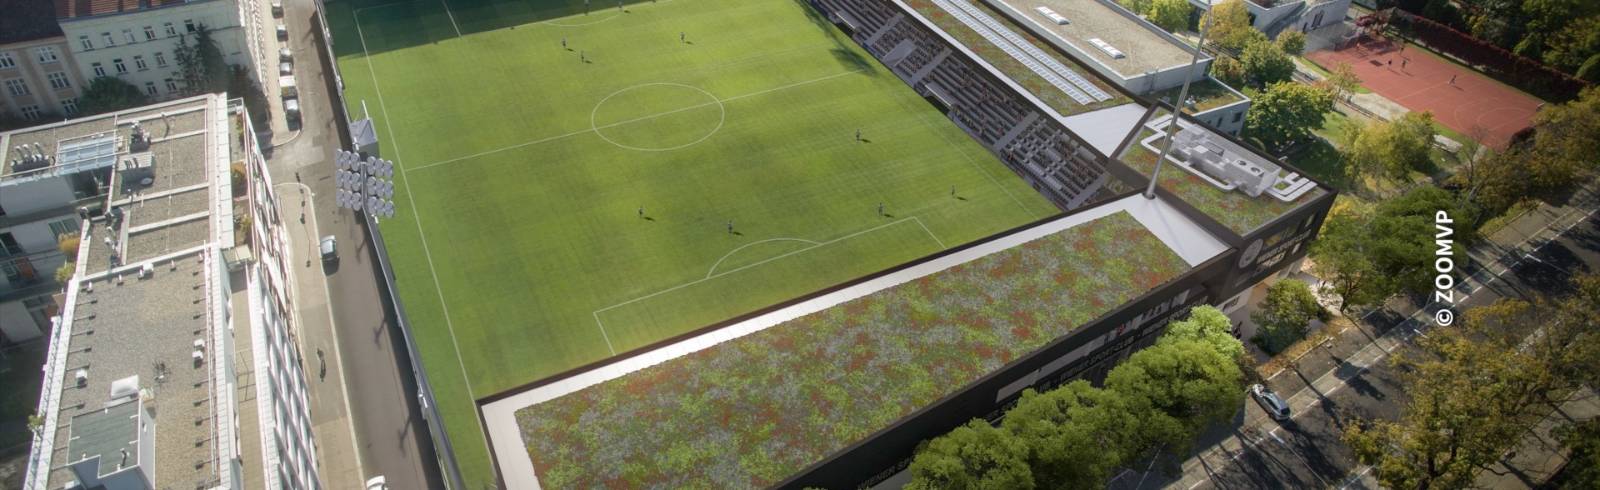 Sport-Club bekommt neues Stadion